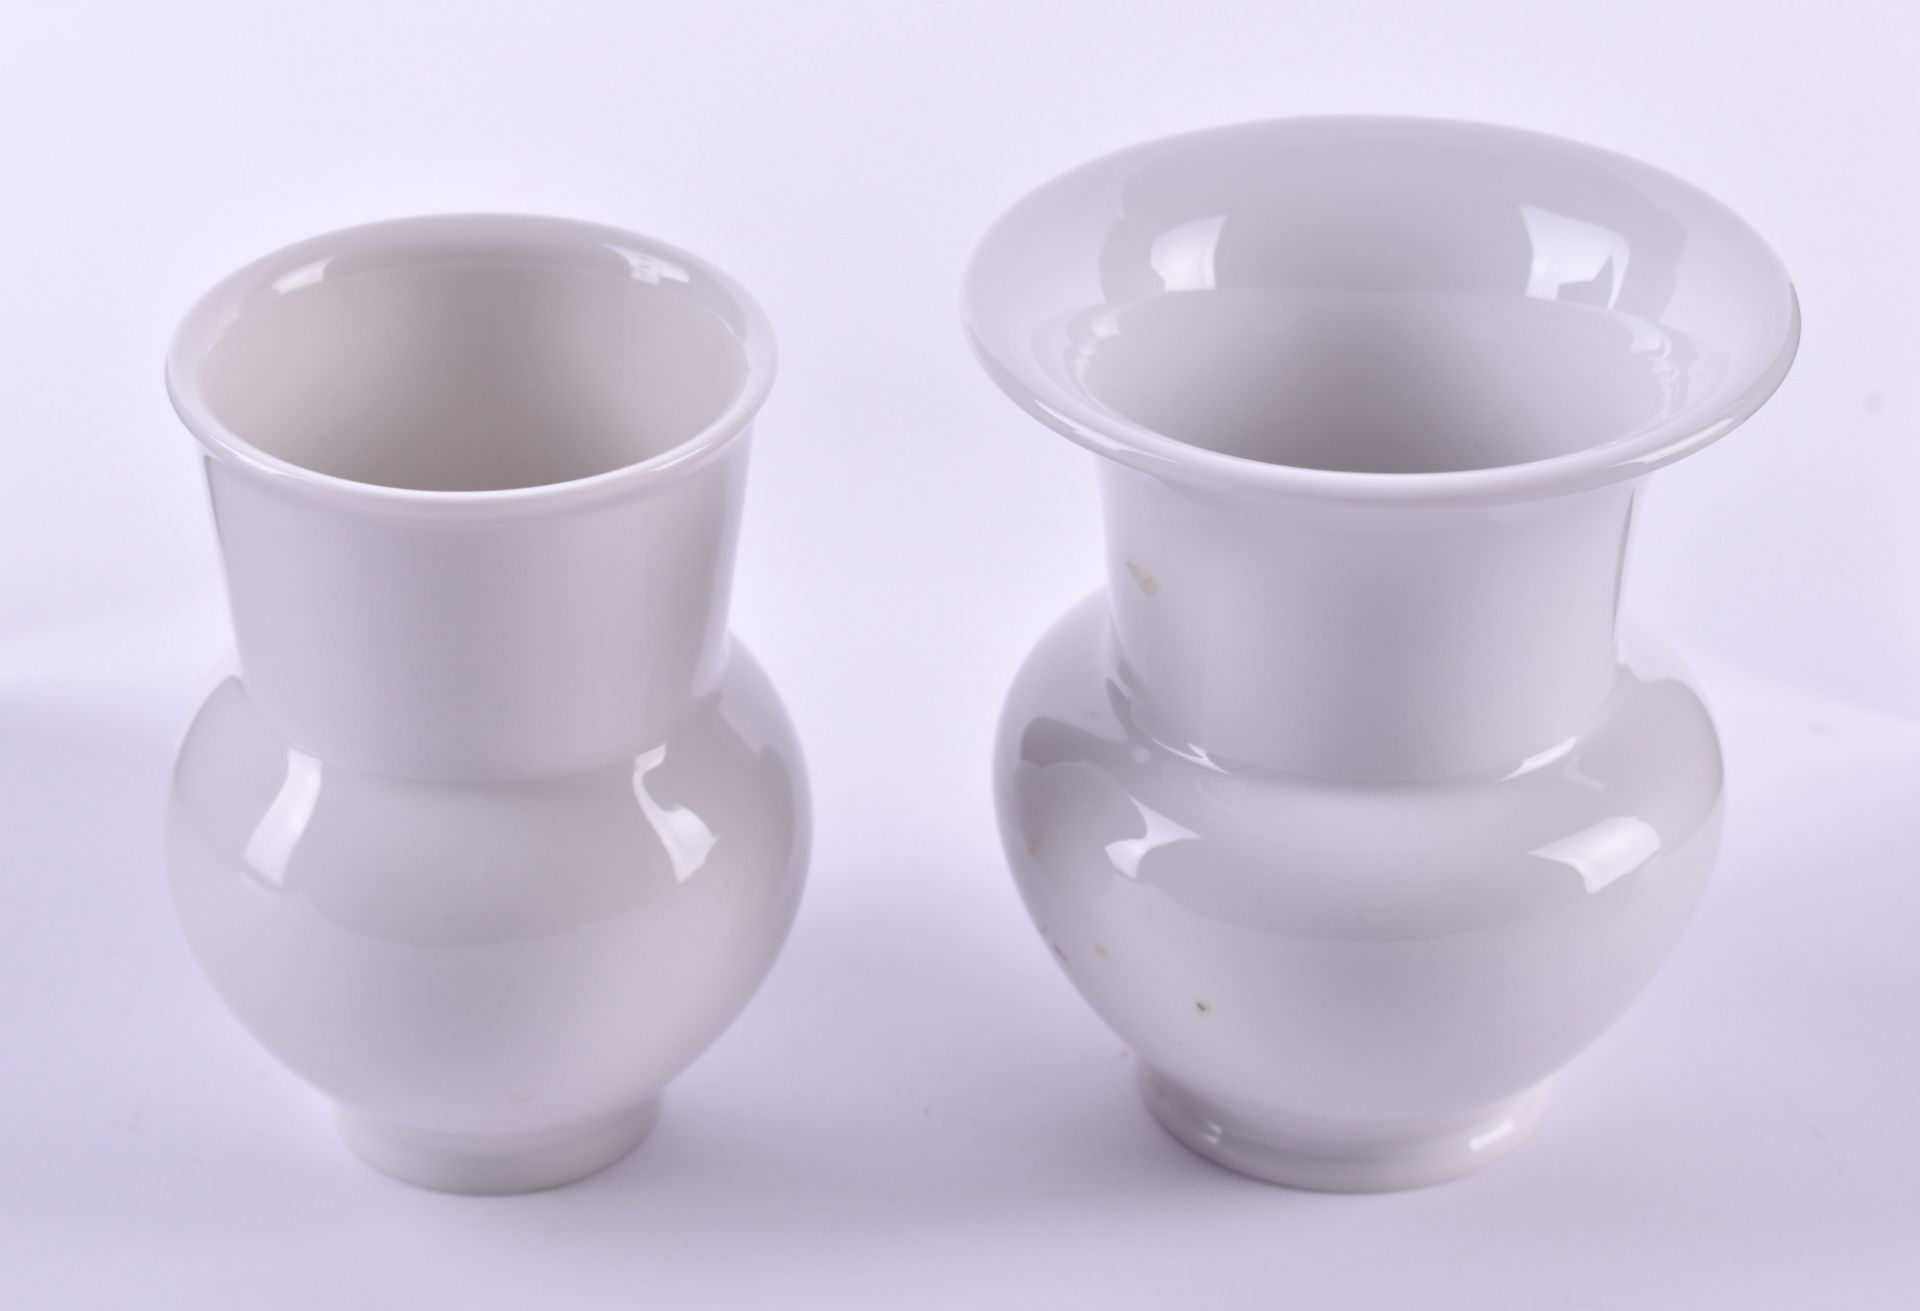 2 vases KPM Berlinwhite porcelain, blue scepter mark, 1st choice, height: 9.5 cm and 10 cm2 Vasen - Bild 2 aus 4